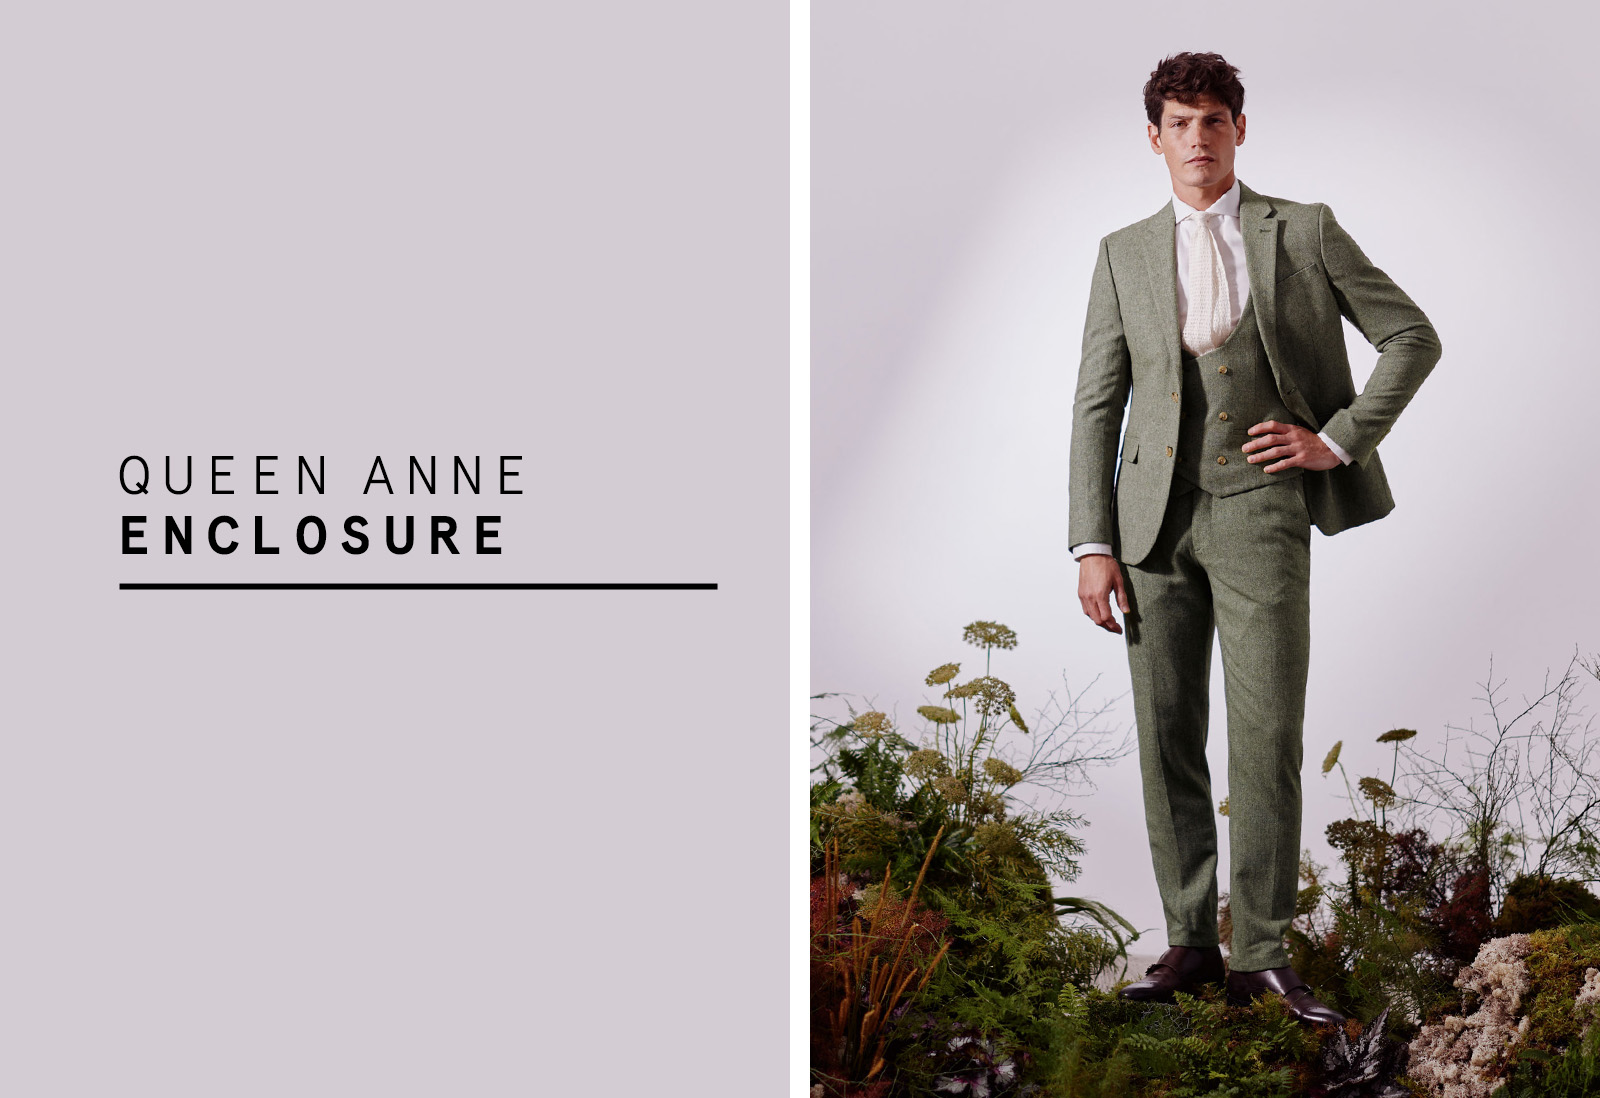 Moss - slim fit sage herringbone tweed suit